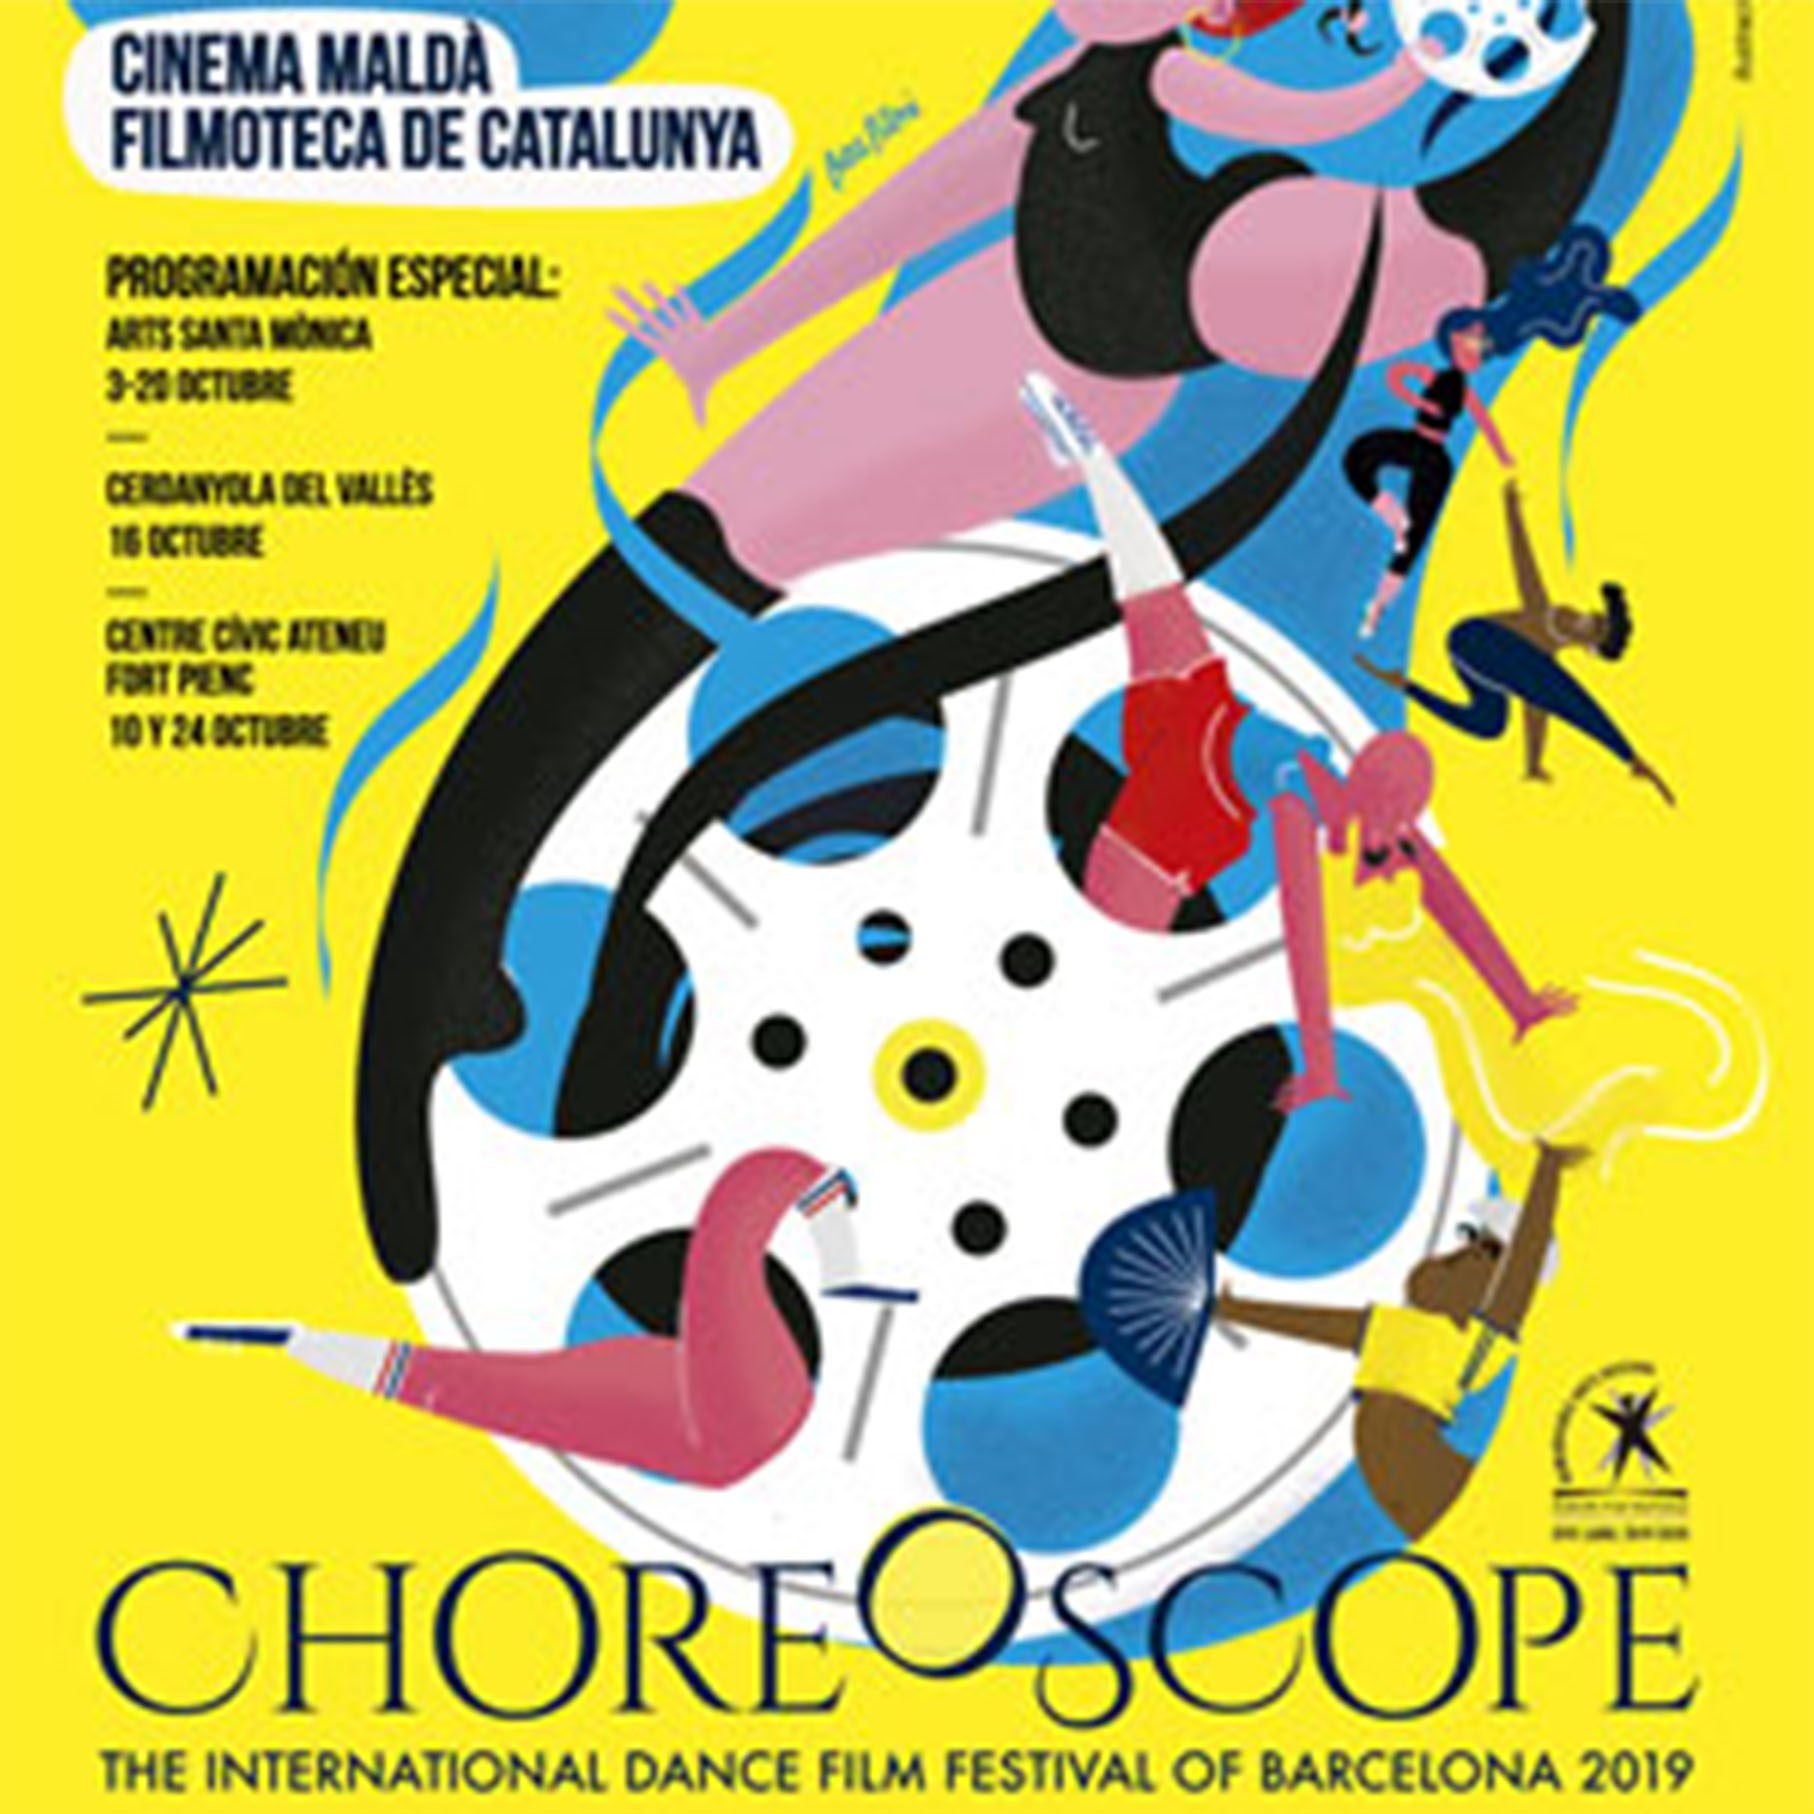  Choreoscope